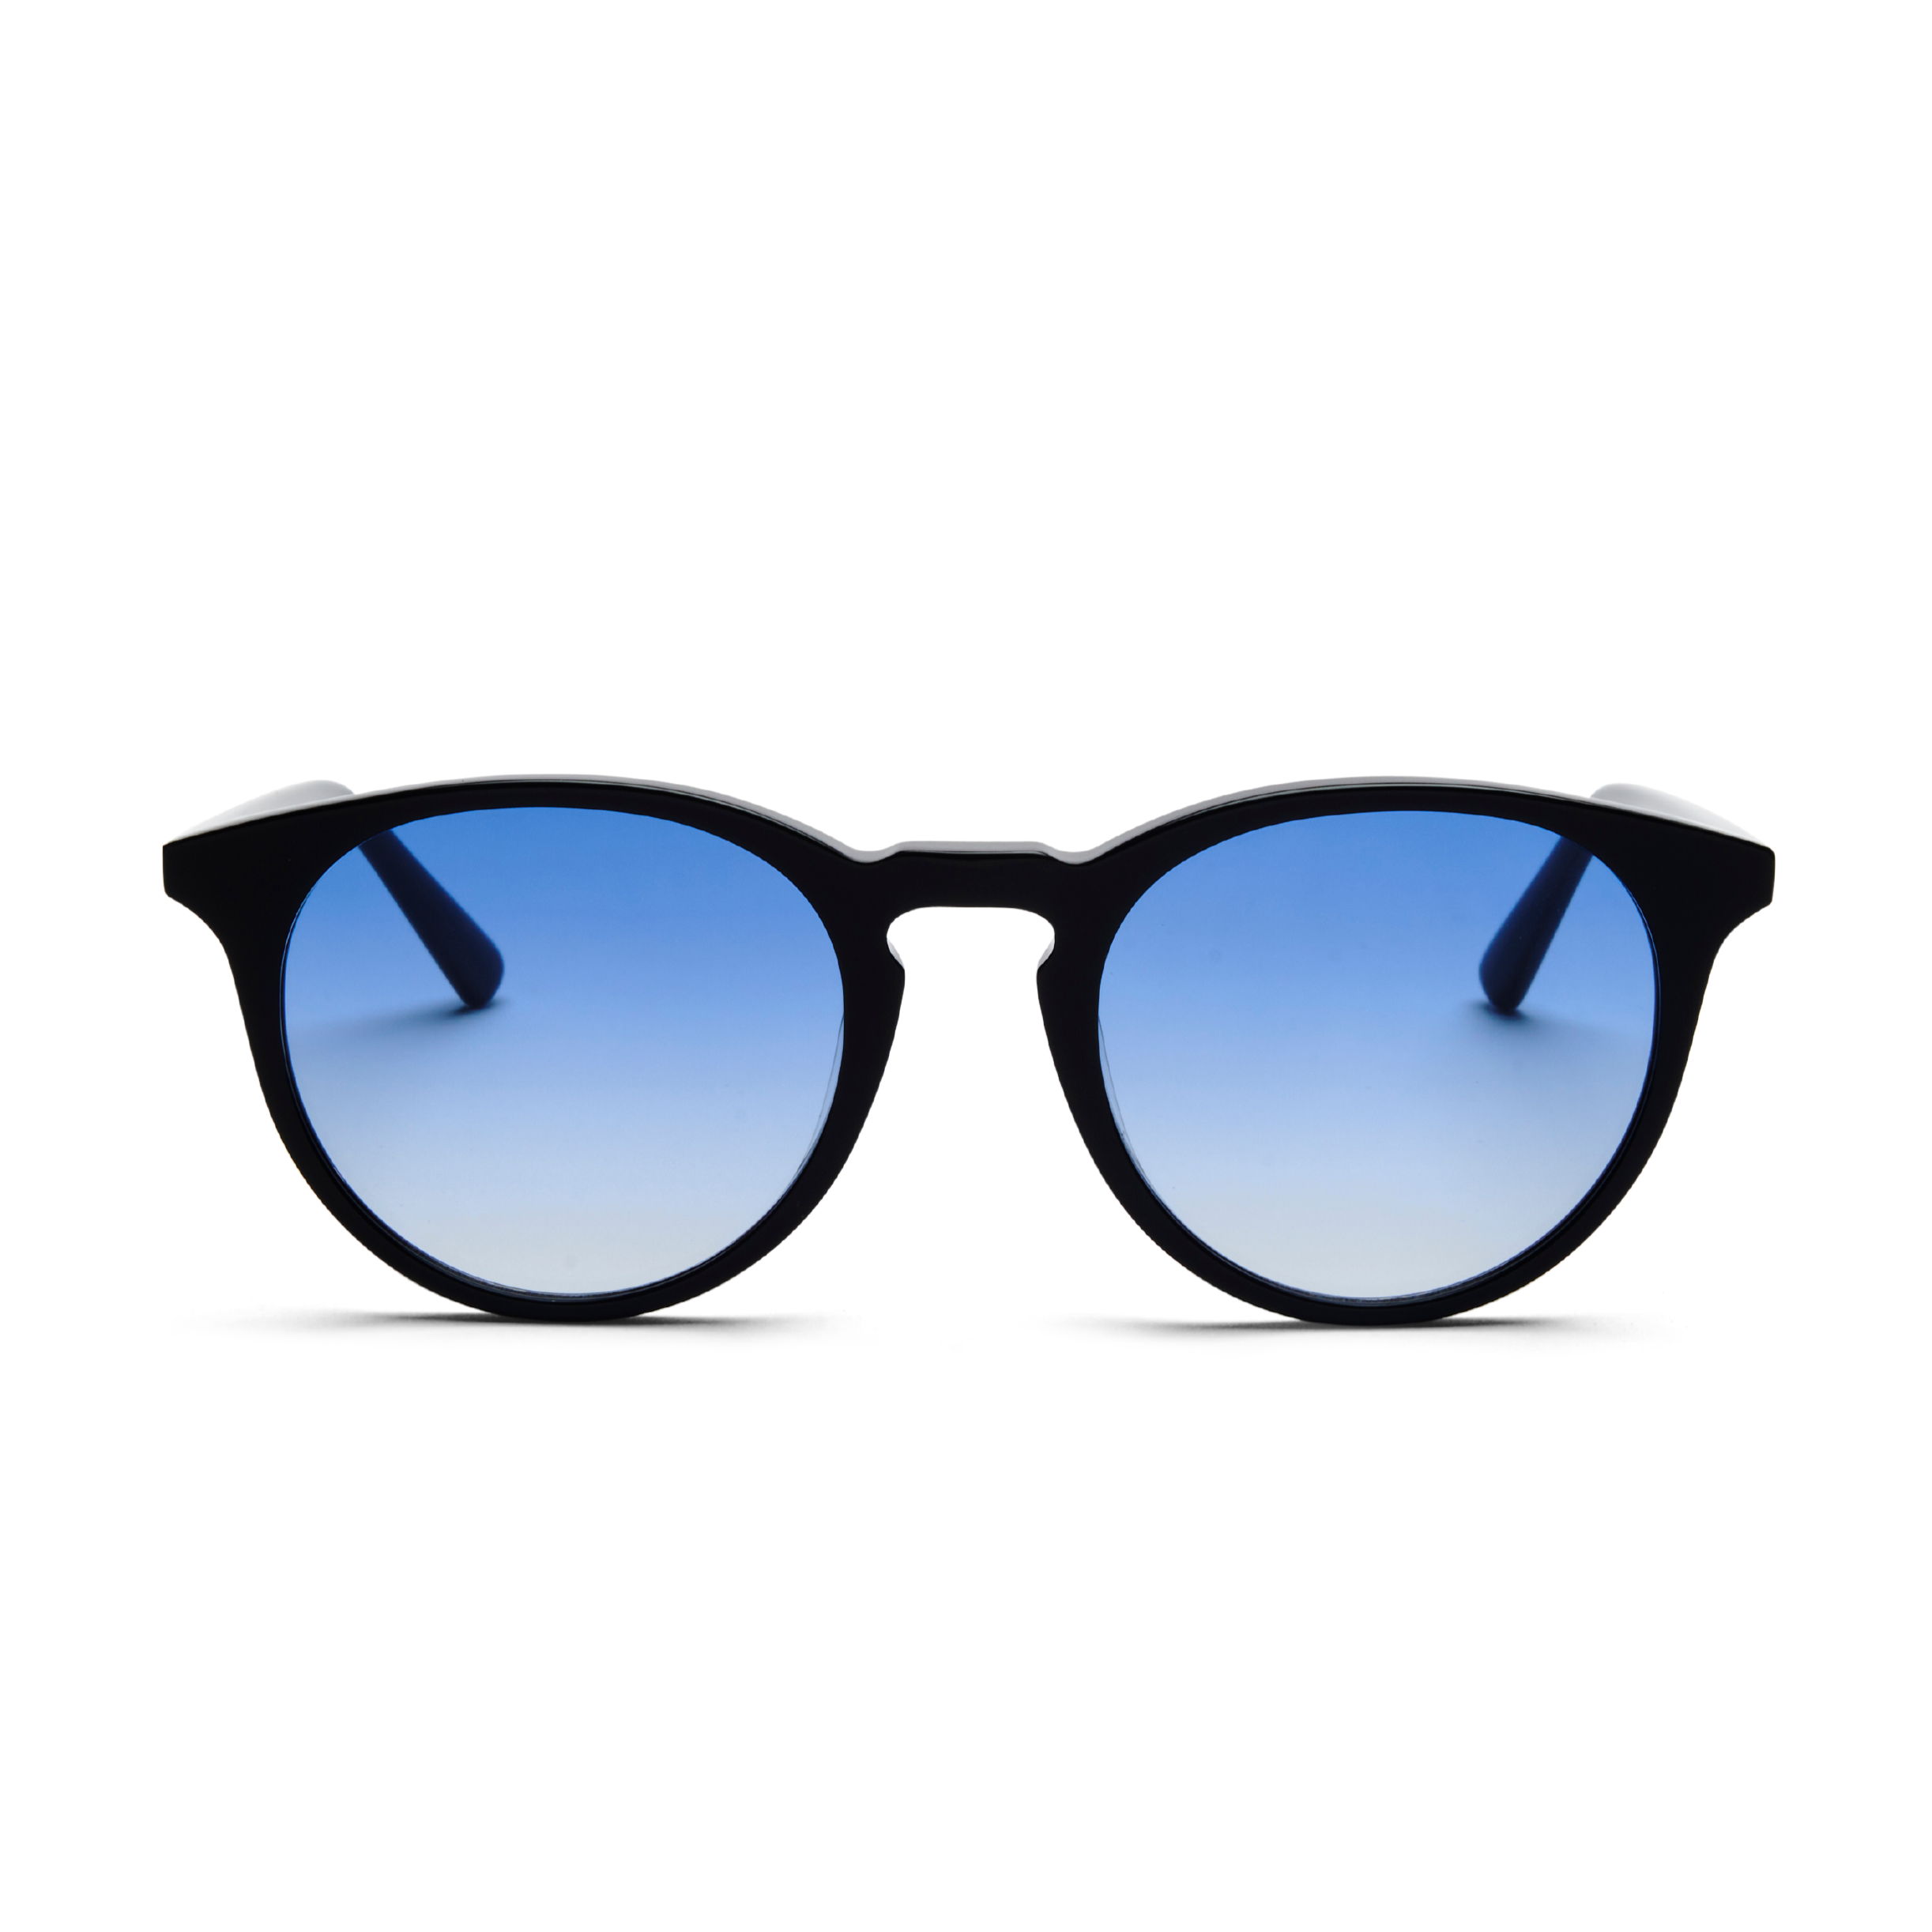 Sunglasses New Depp in Black w. Blue lenses